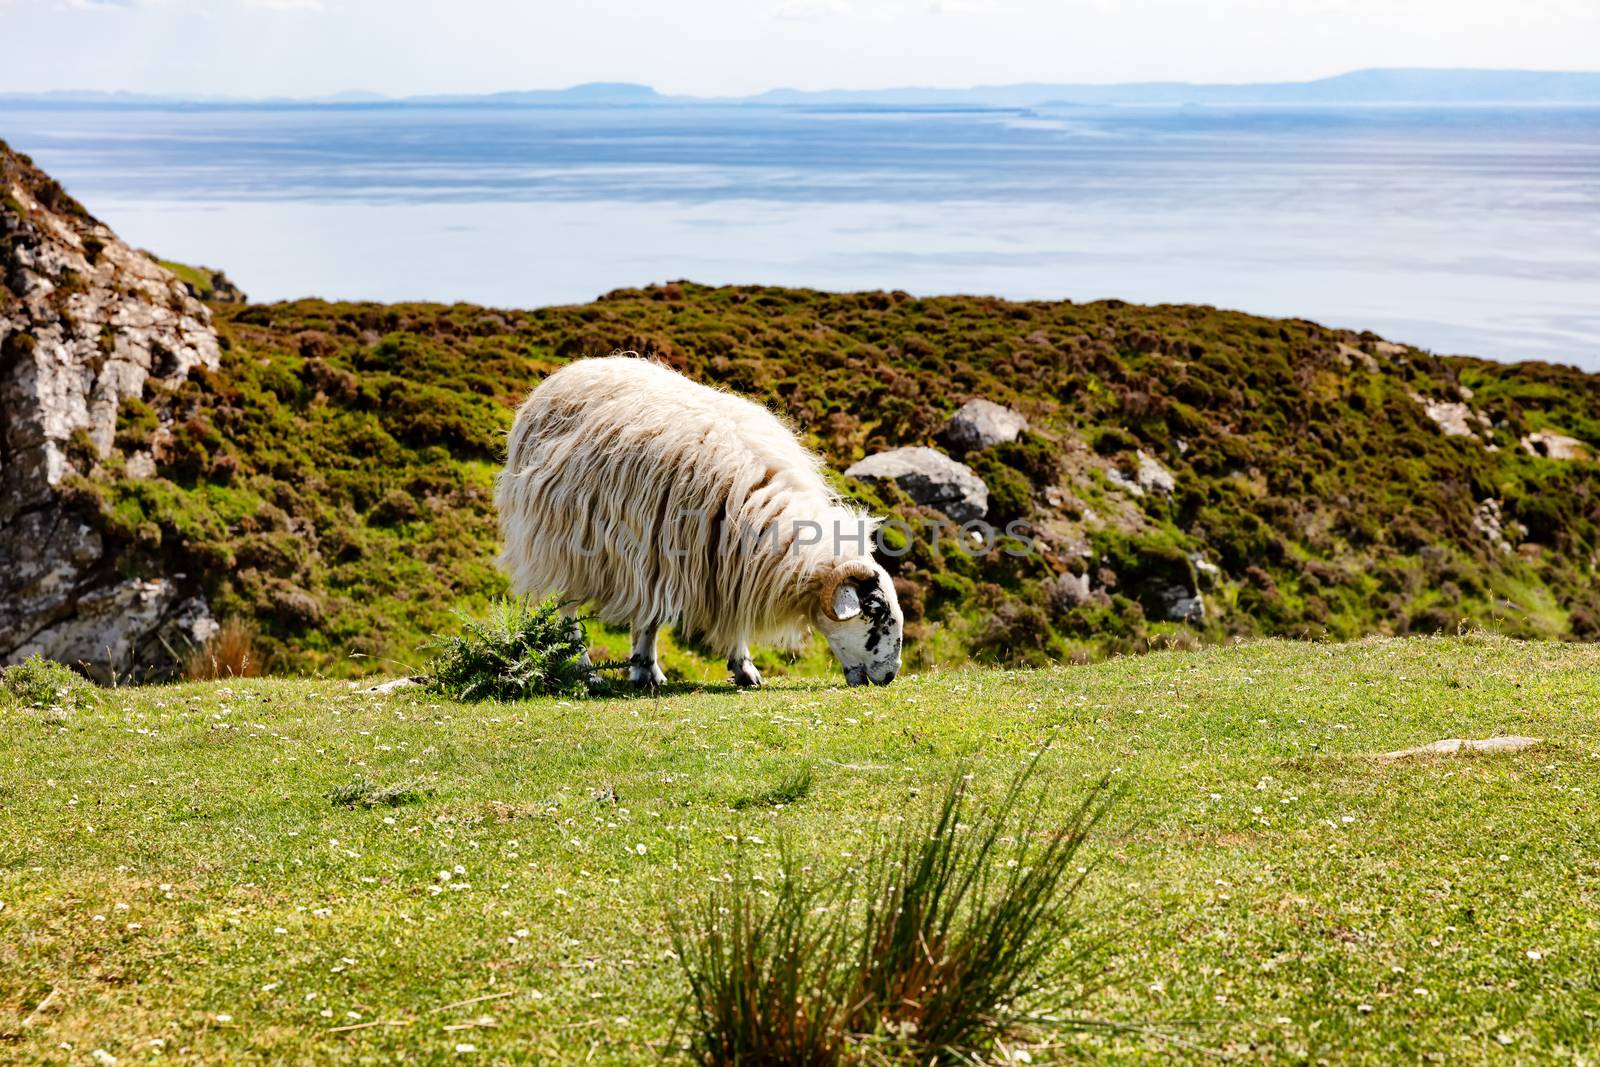 Mature sheep grazing near ocean 